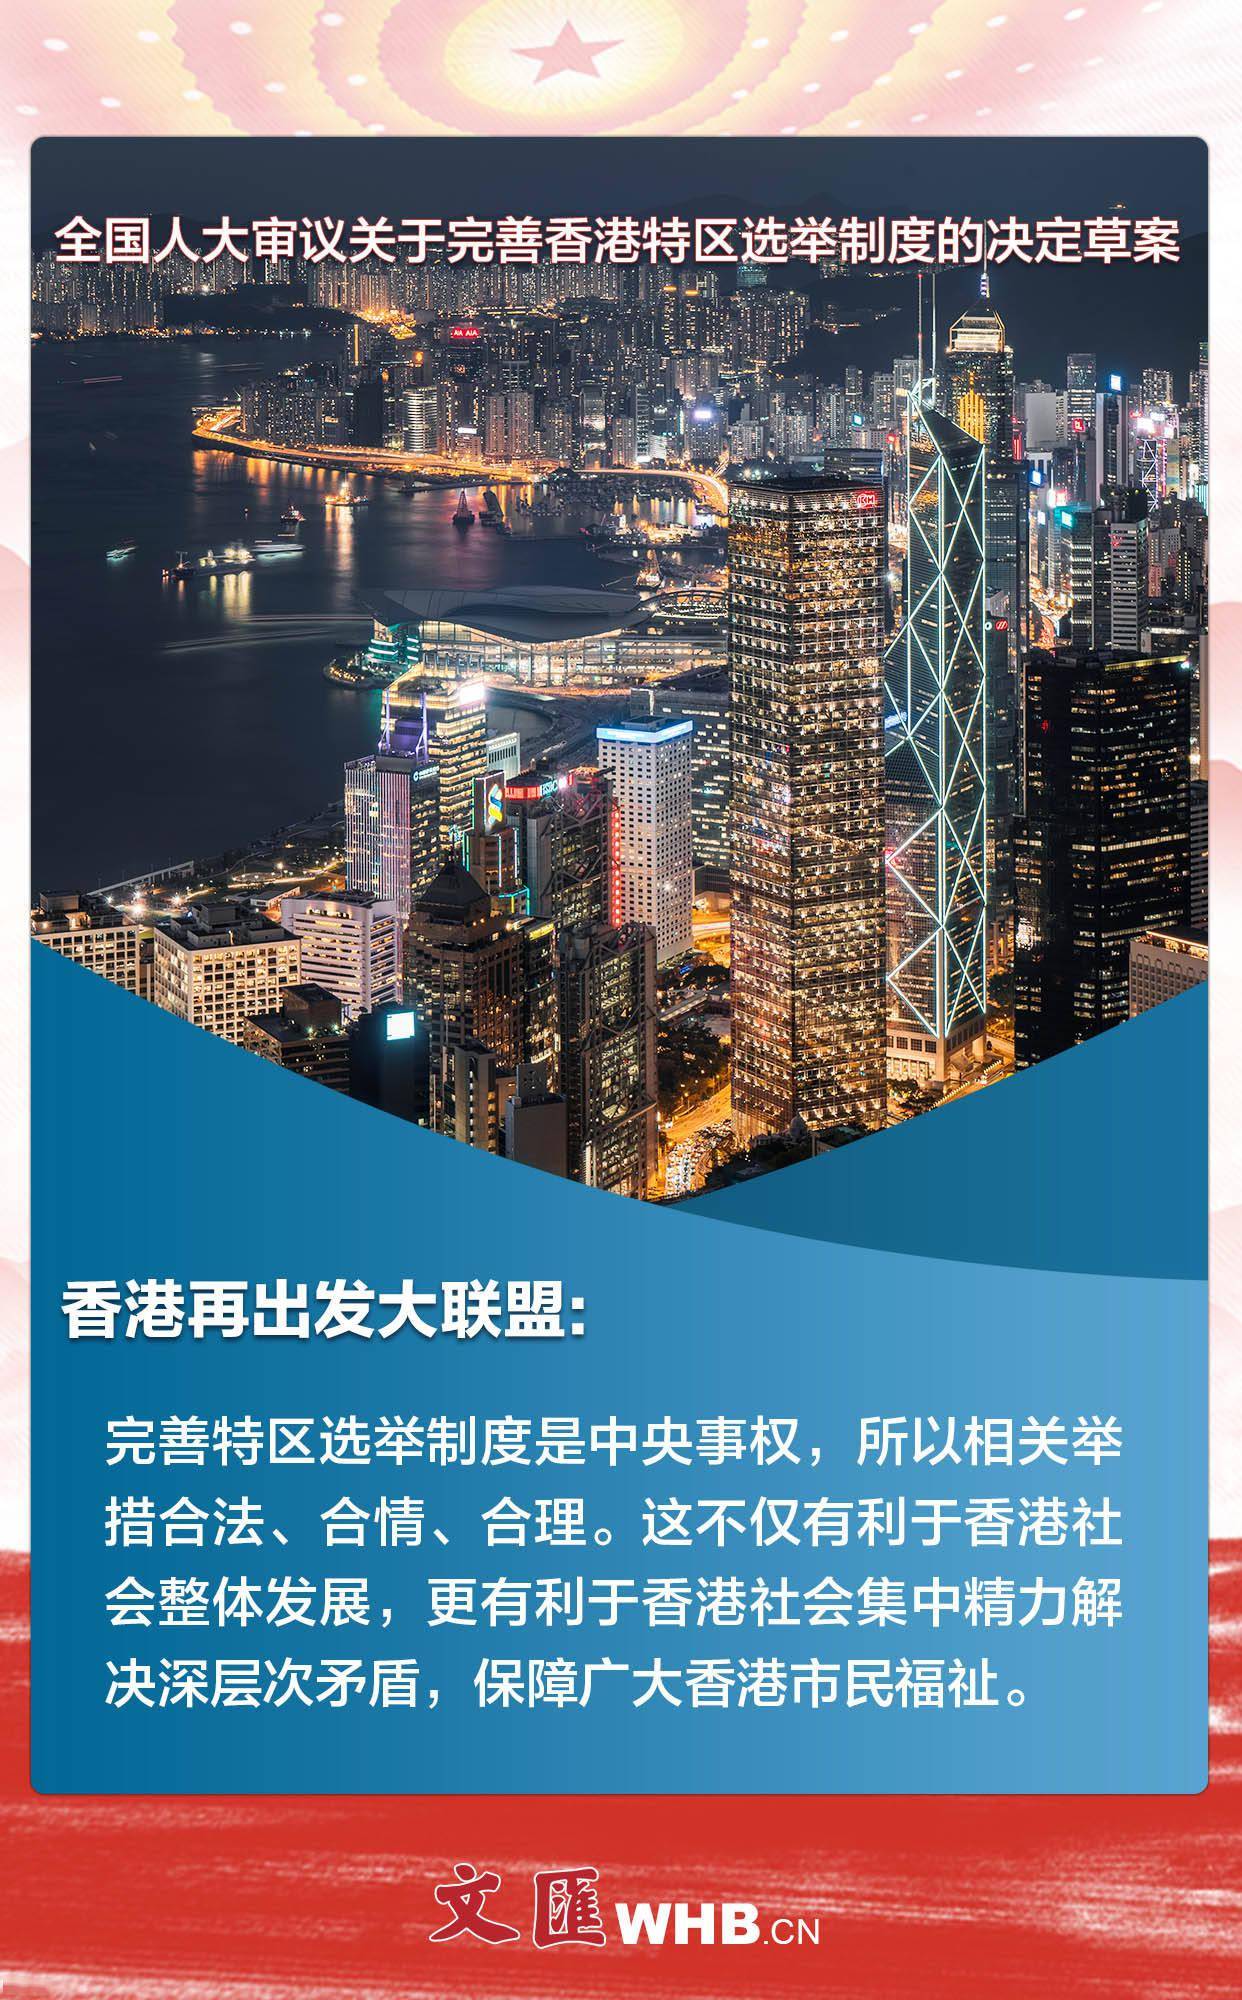 香港各界:支持完善香港特区选举制度,始终坚持"爱国者治港"原则